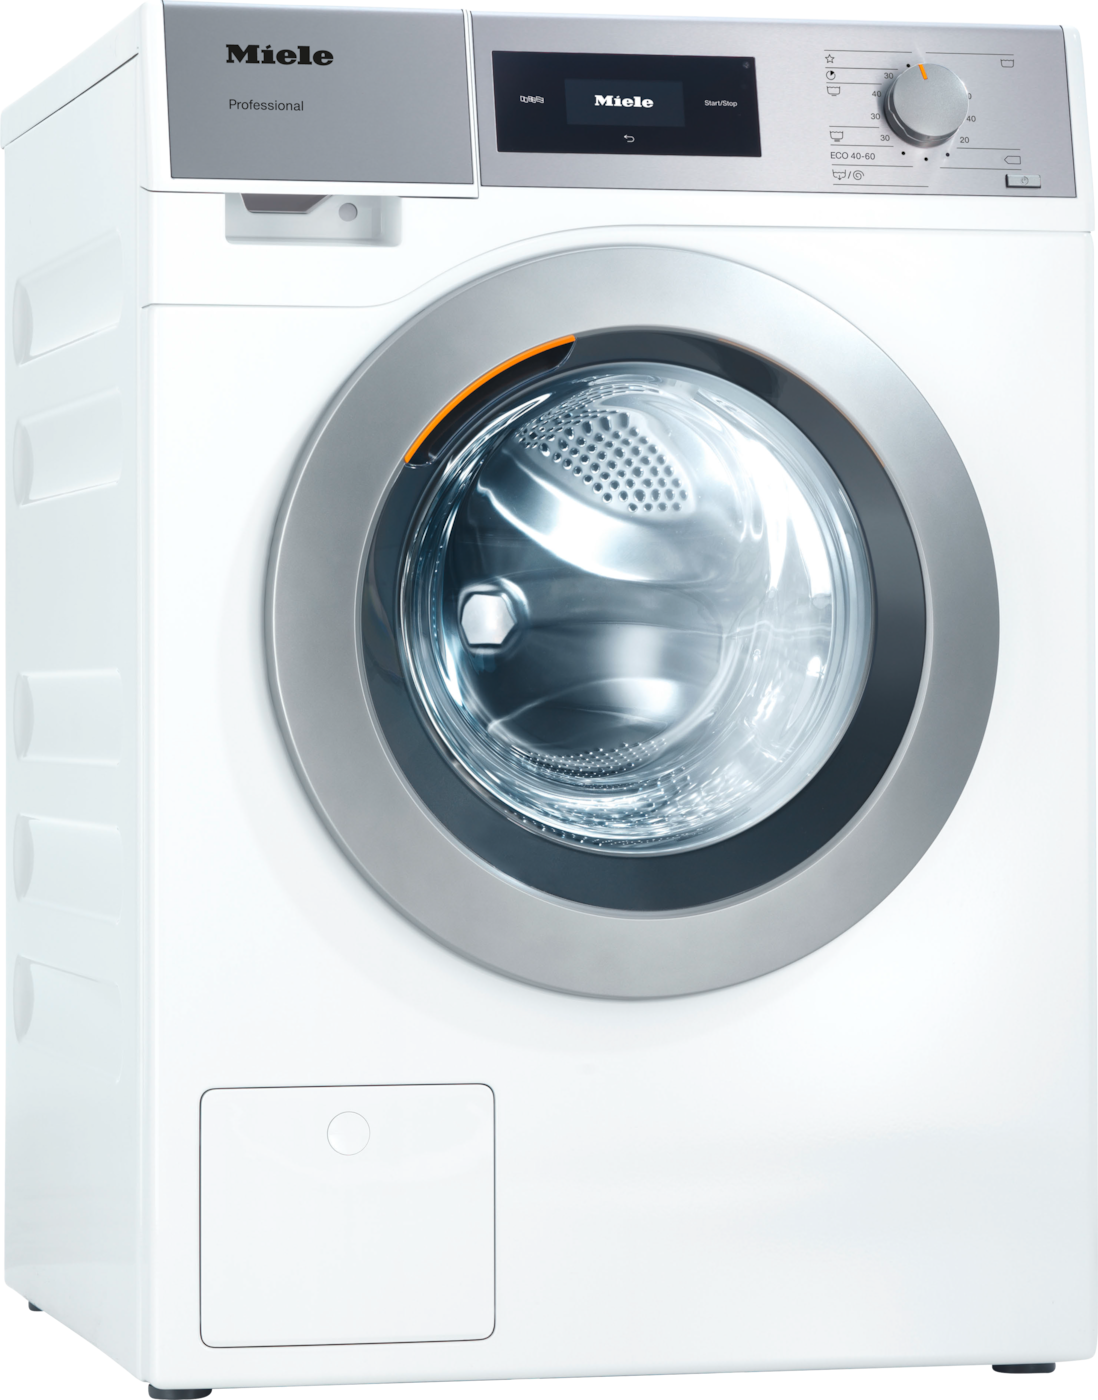 PWM 508 [EL DP] - Professional Waschmaschine, Kleiner Riese, elektrobeheizt, mit Ablaufpumpe 